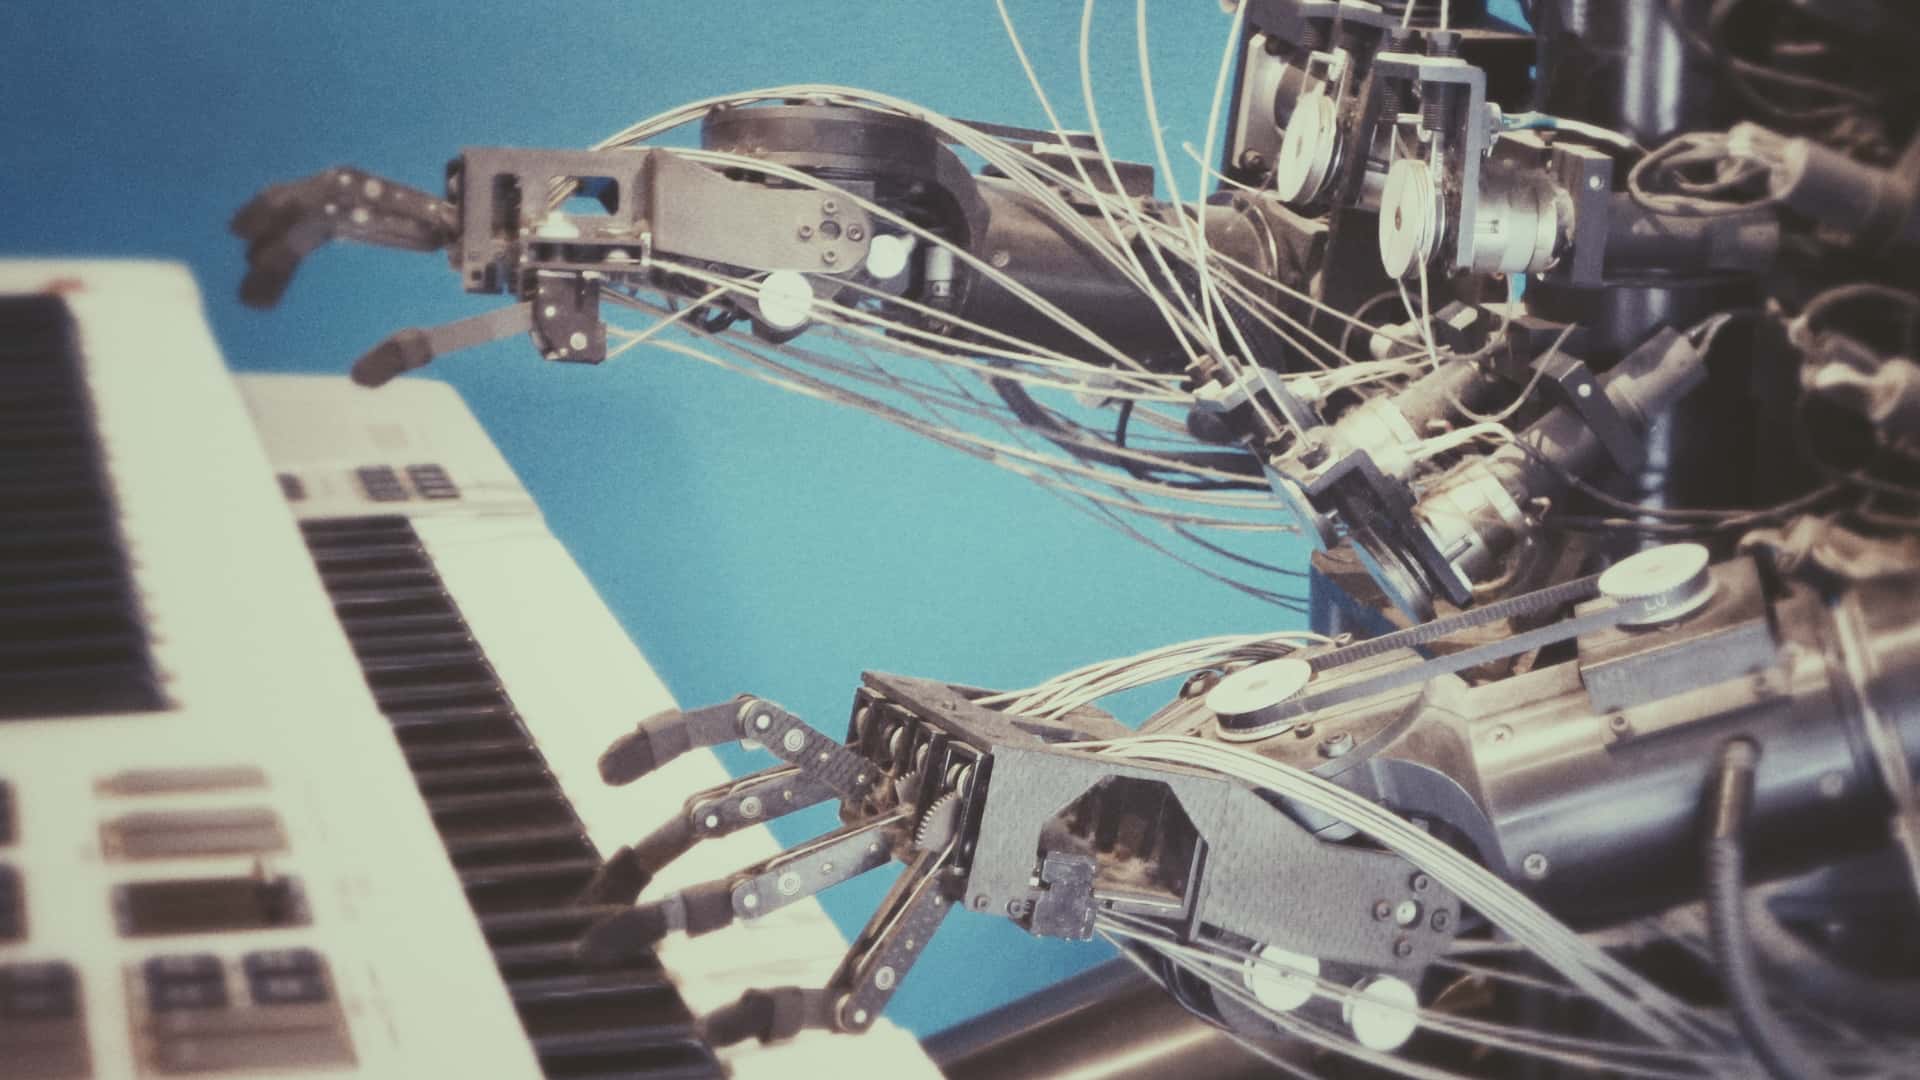 Klavier spielender Roboter als Beispiel für KI und Maschinelles Lernen